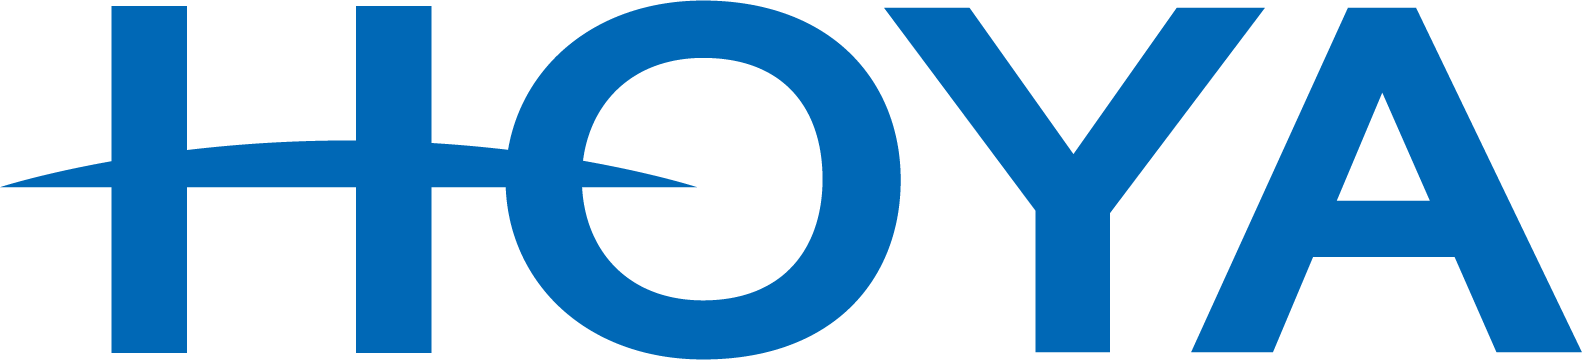 Hoya Logo png